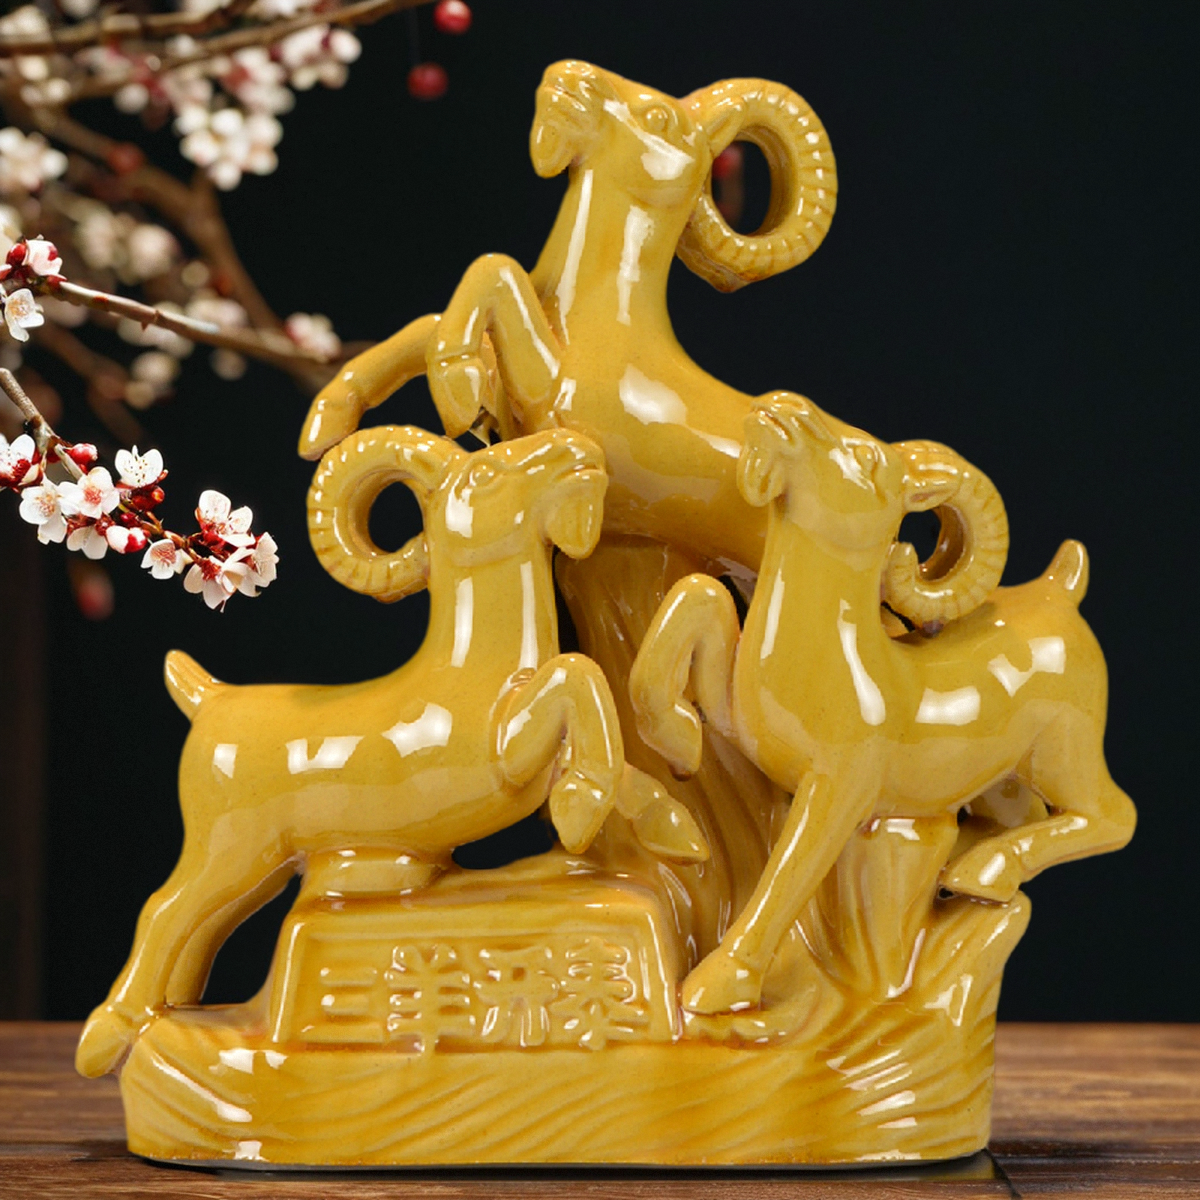 唐三彩陶瓷羊摆件三羊开泰中式新年装饰品风水黄色补缺角陶土烧制